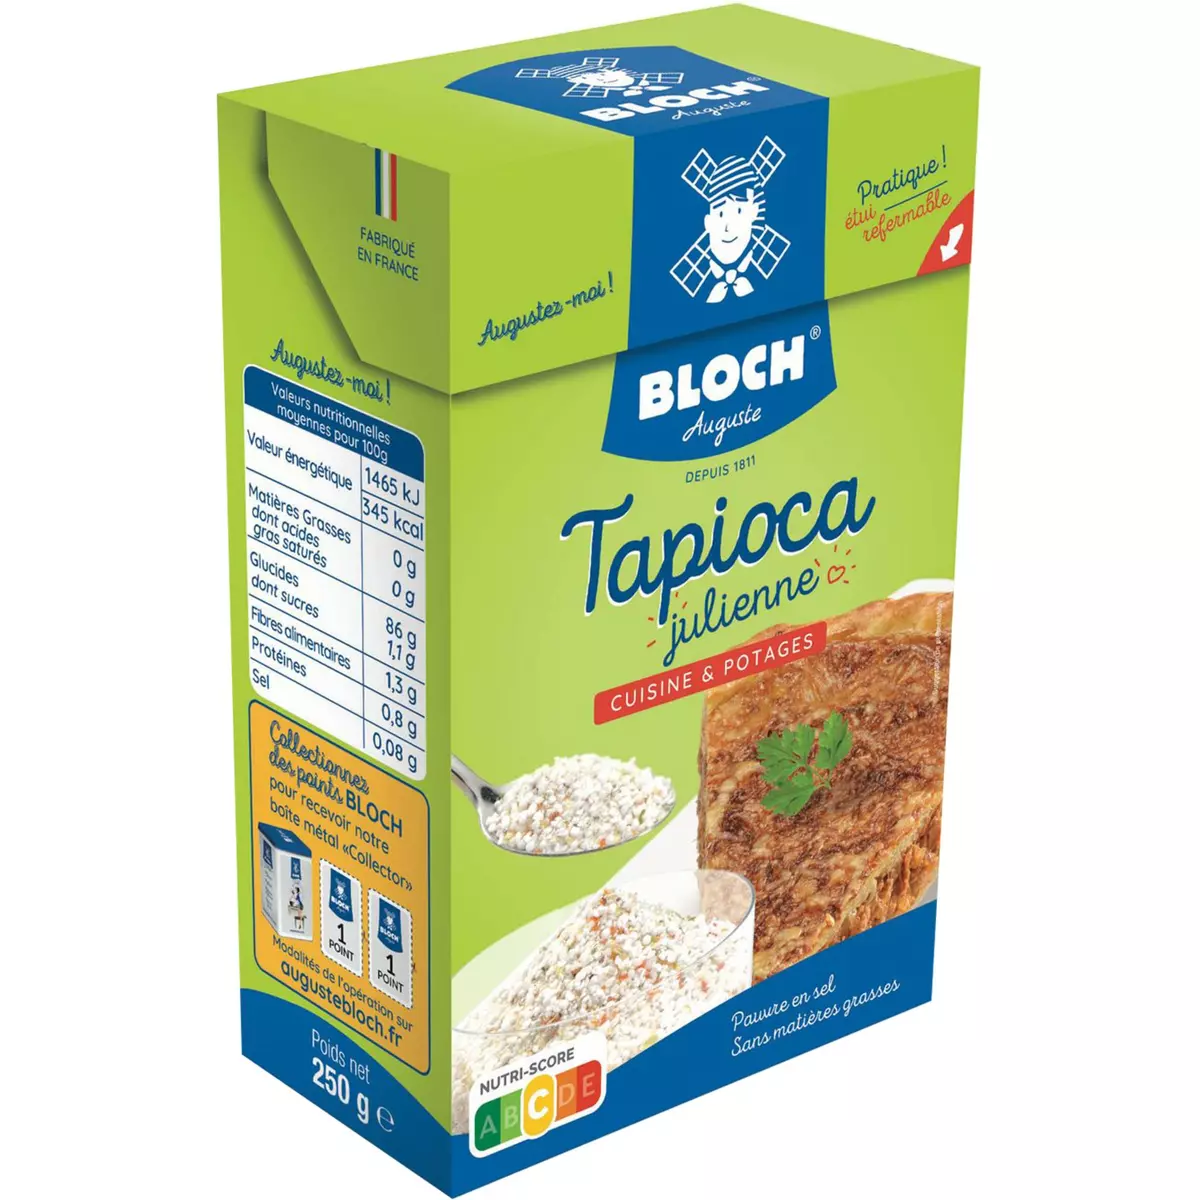 BLOCH Tapioca julienne cuisine et potages 250g